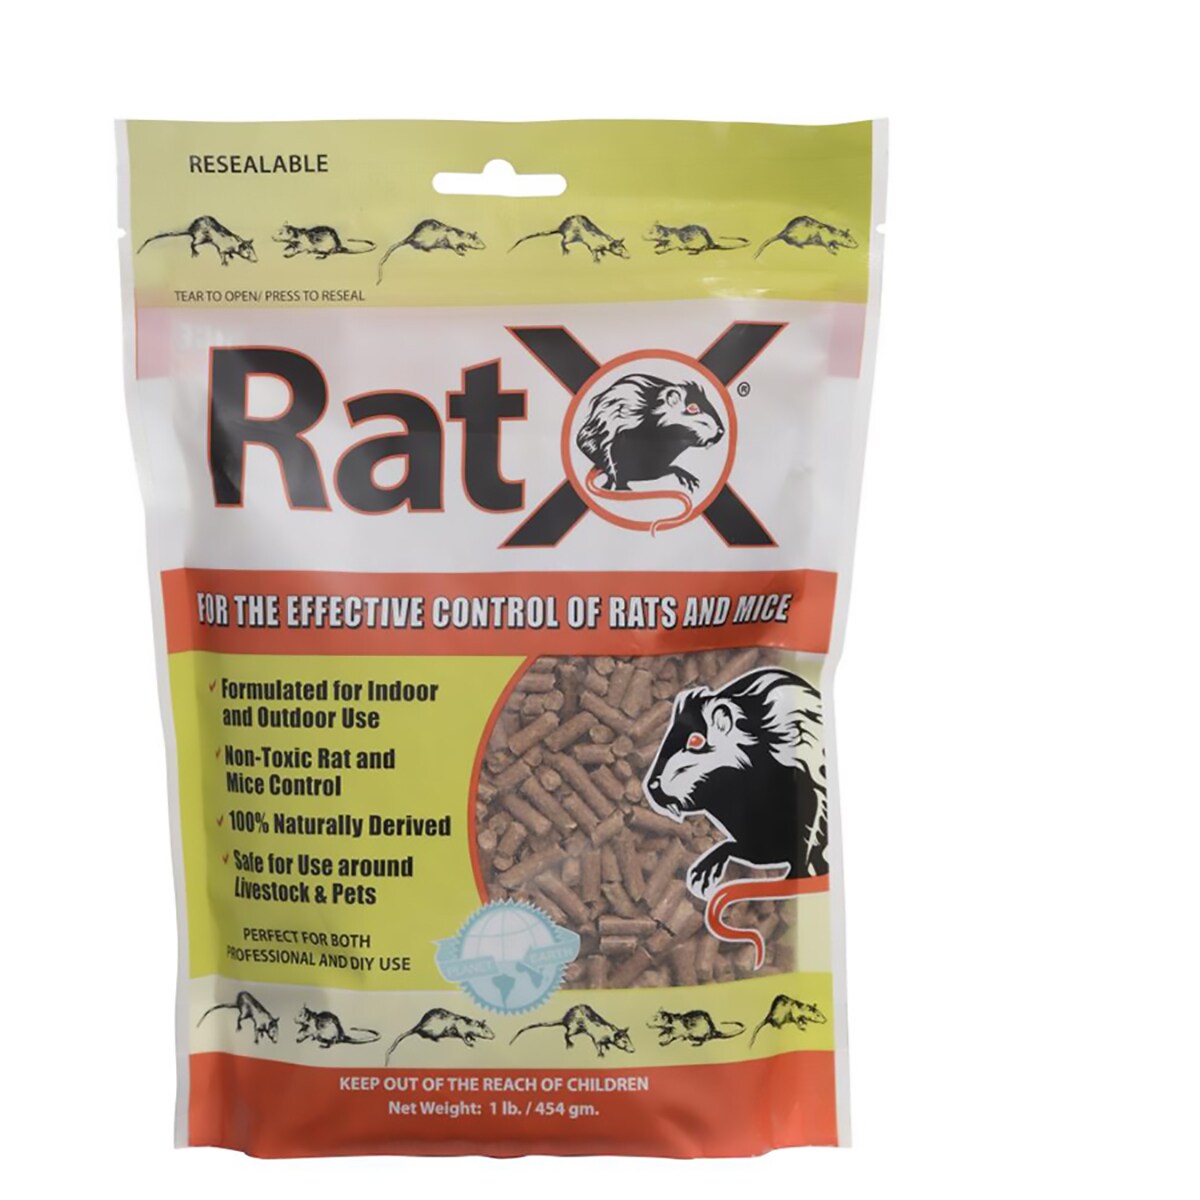 Best Rat Poisons